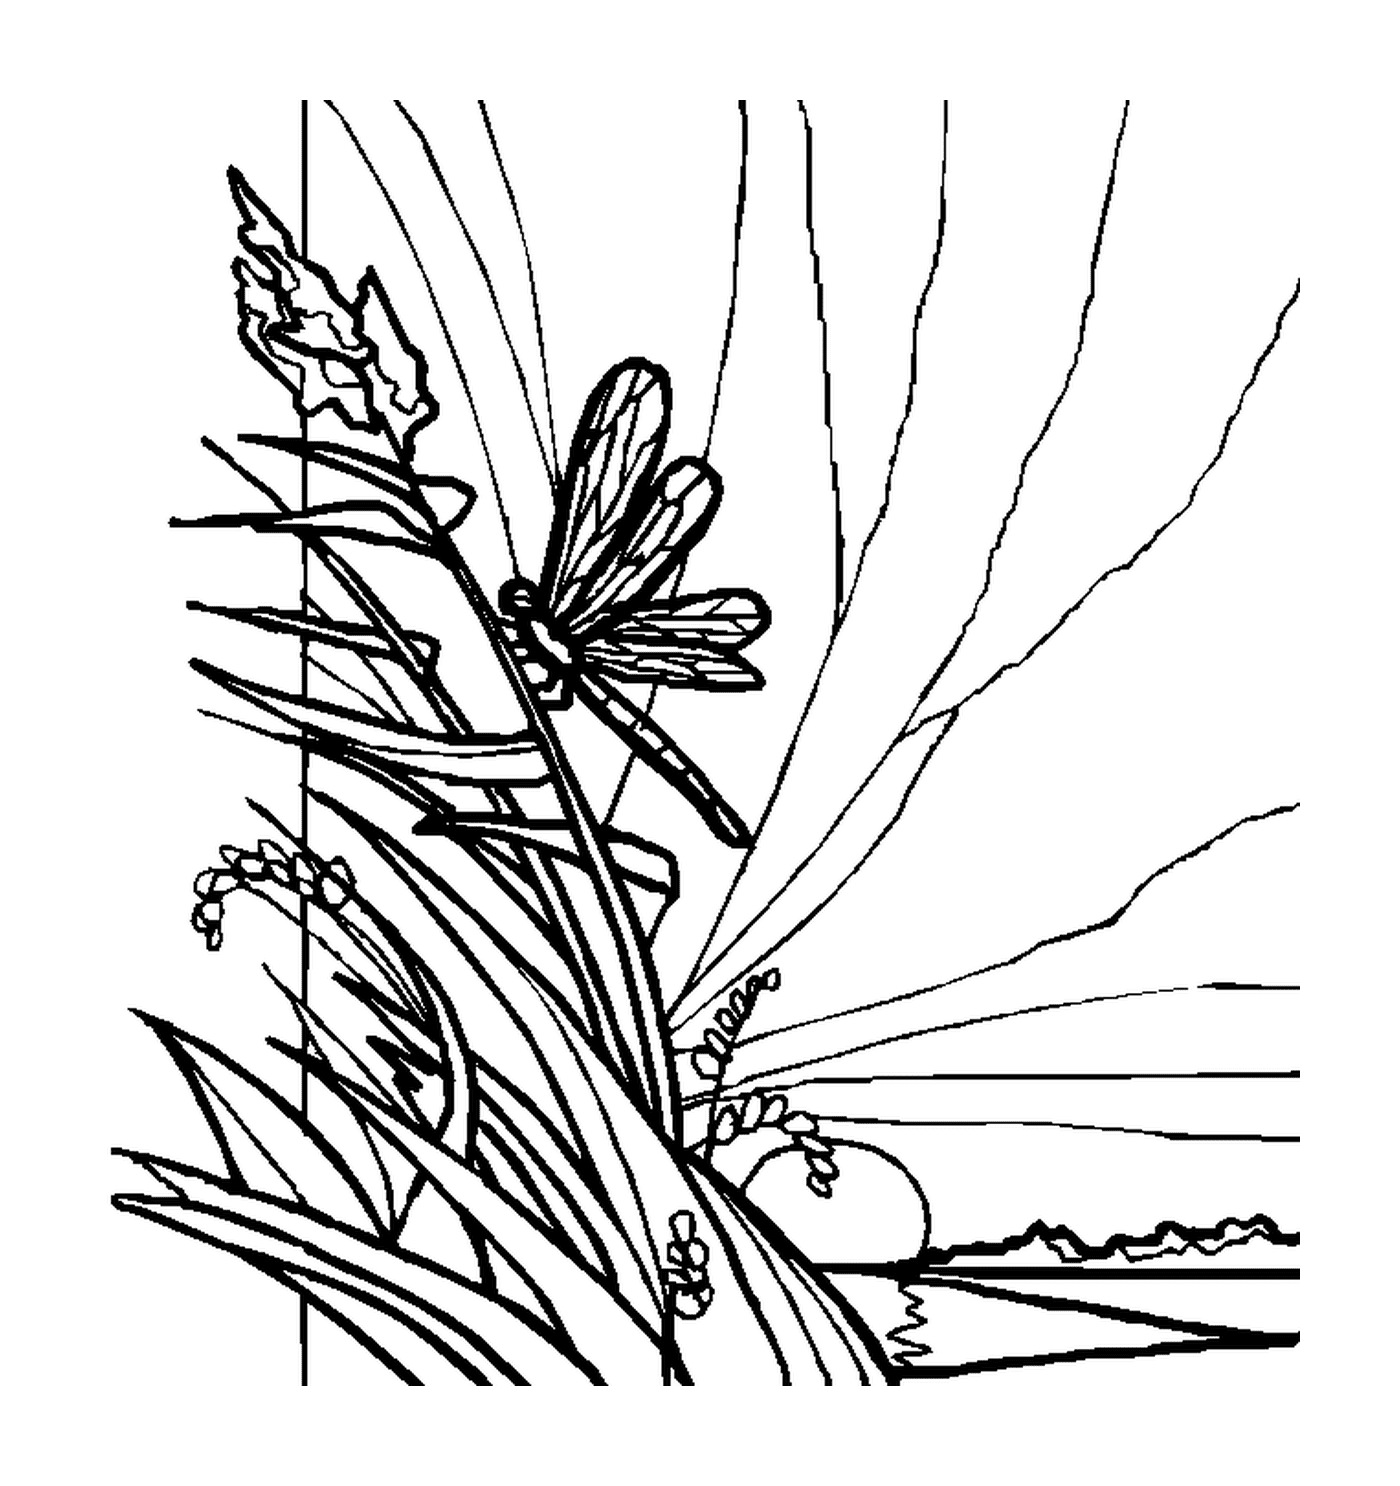 libellule posee sur de la vegetation